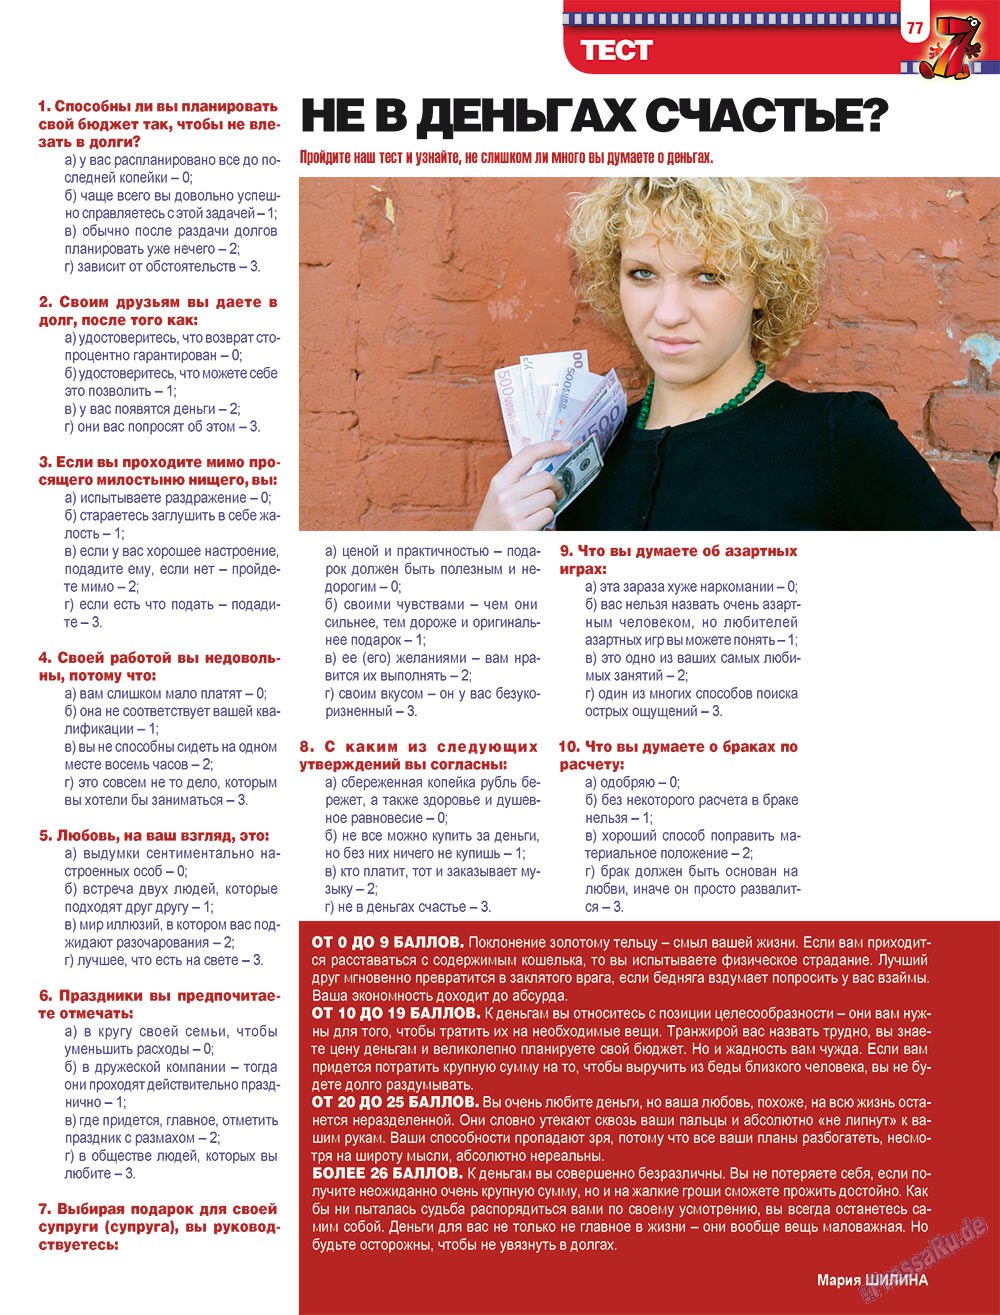 7плюс7я, журнал. 2009 №8 стр.77